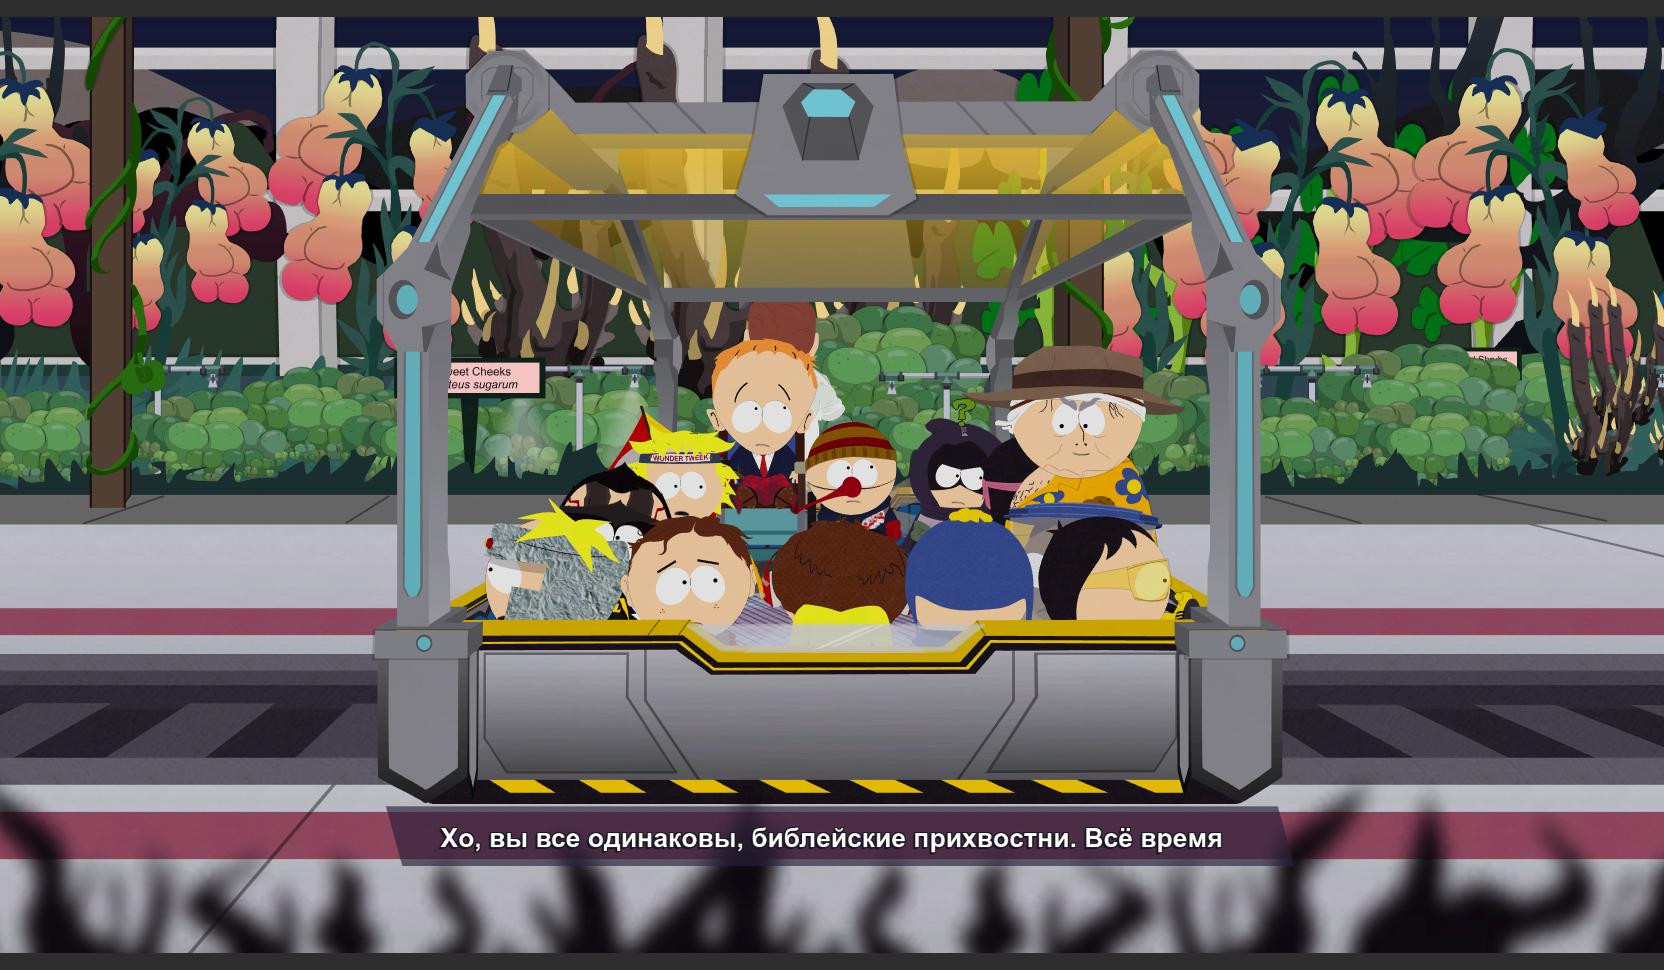 Игры про южный парк. South Park the Fractured but whole Скриншоты. Каса Бонита Южный парк. Цензура в Южном парке в игре. Южный парк 13 карт.